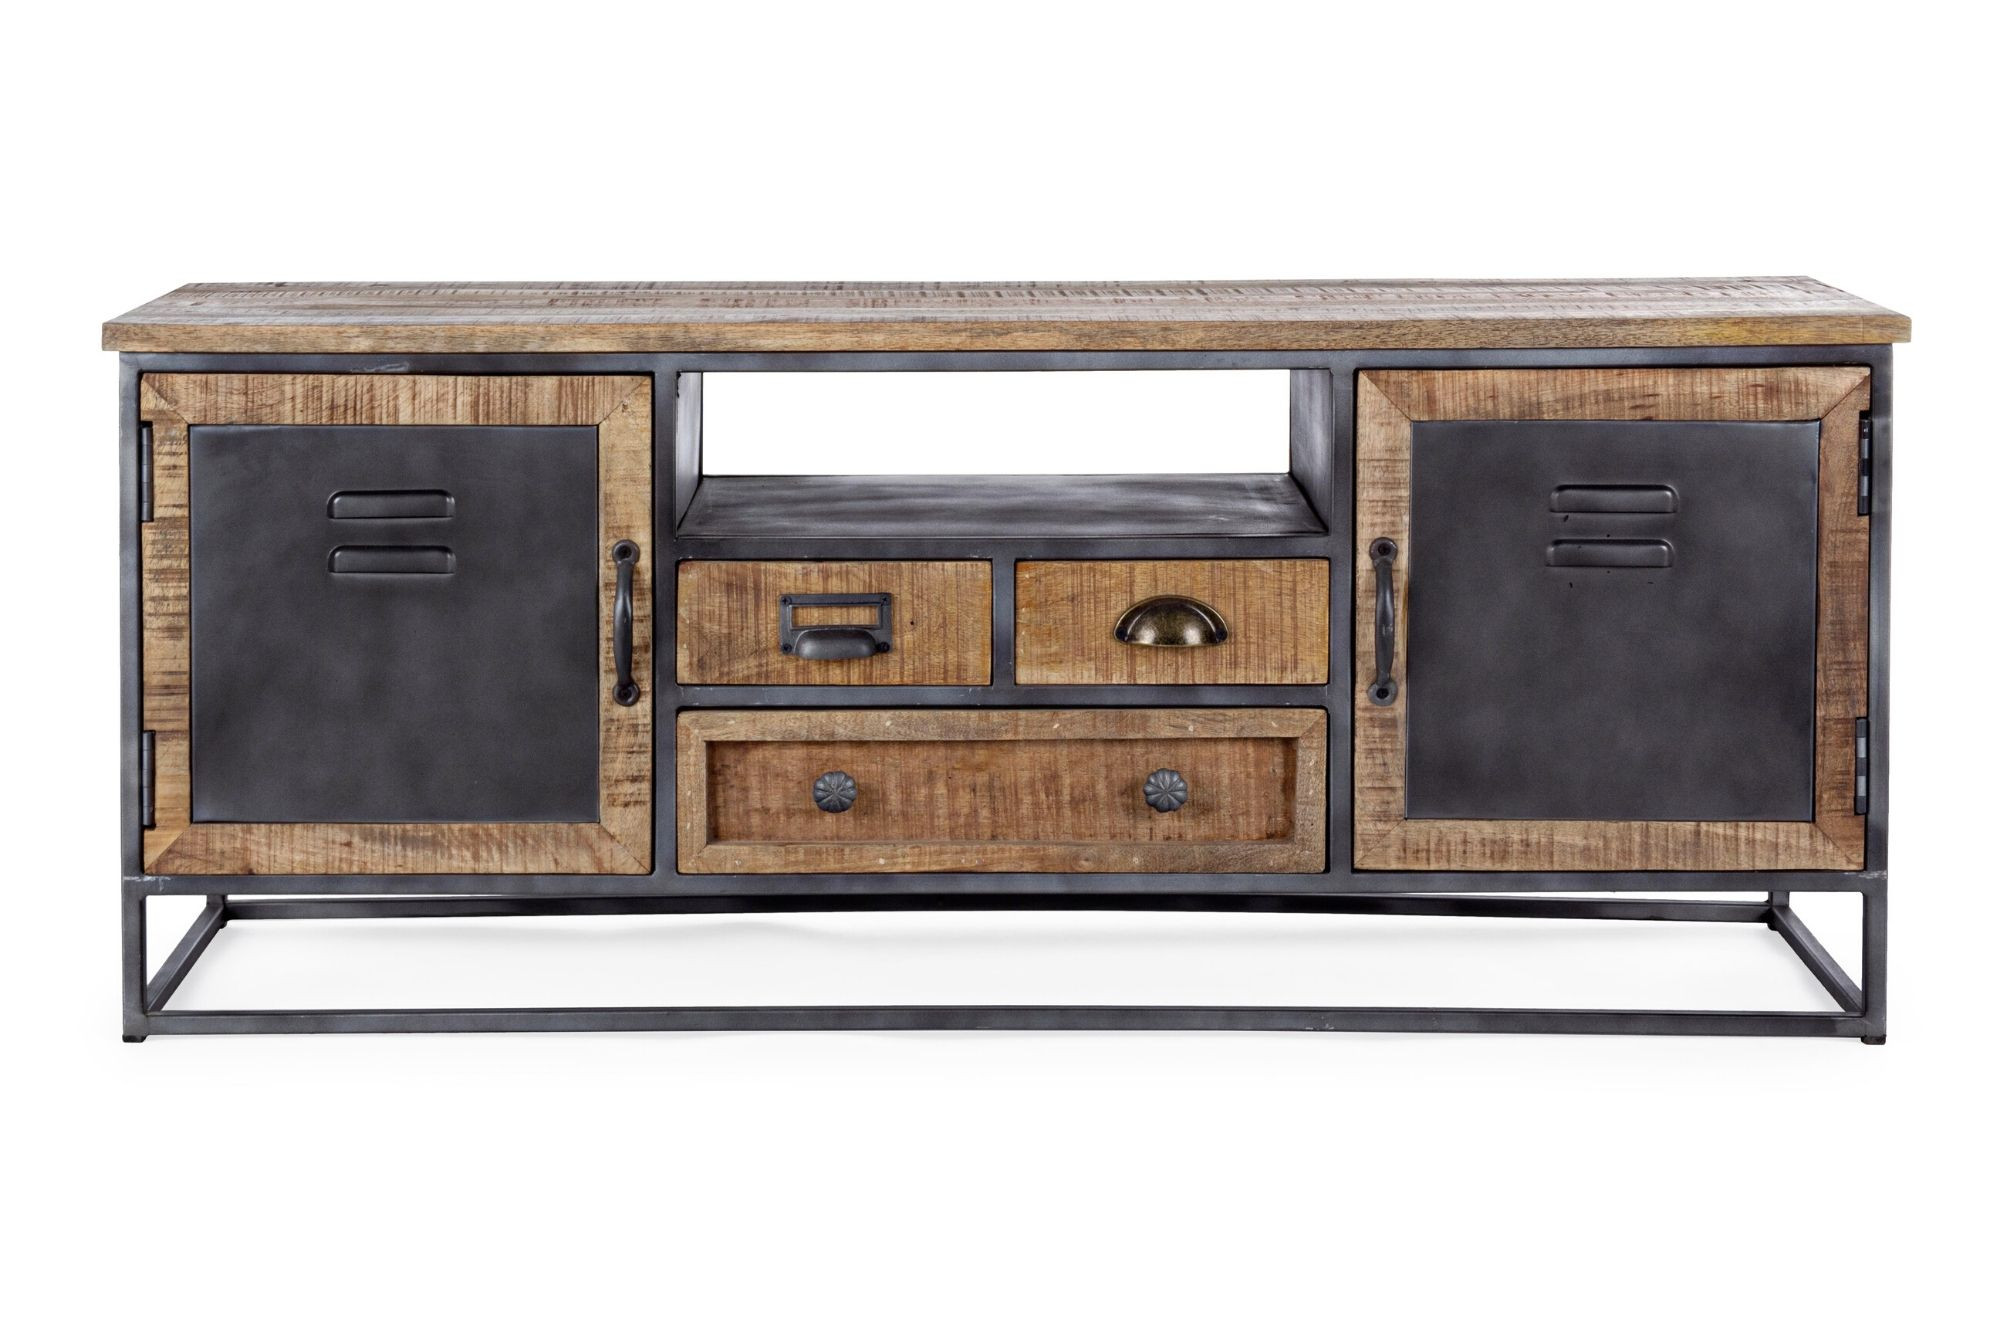 Meuble tv industriel en bois et métal : 2 portes / 1 case - Hellin